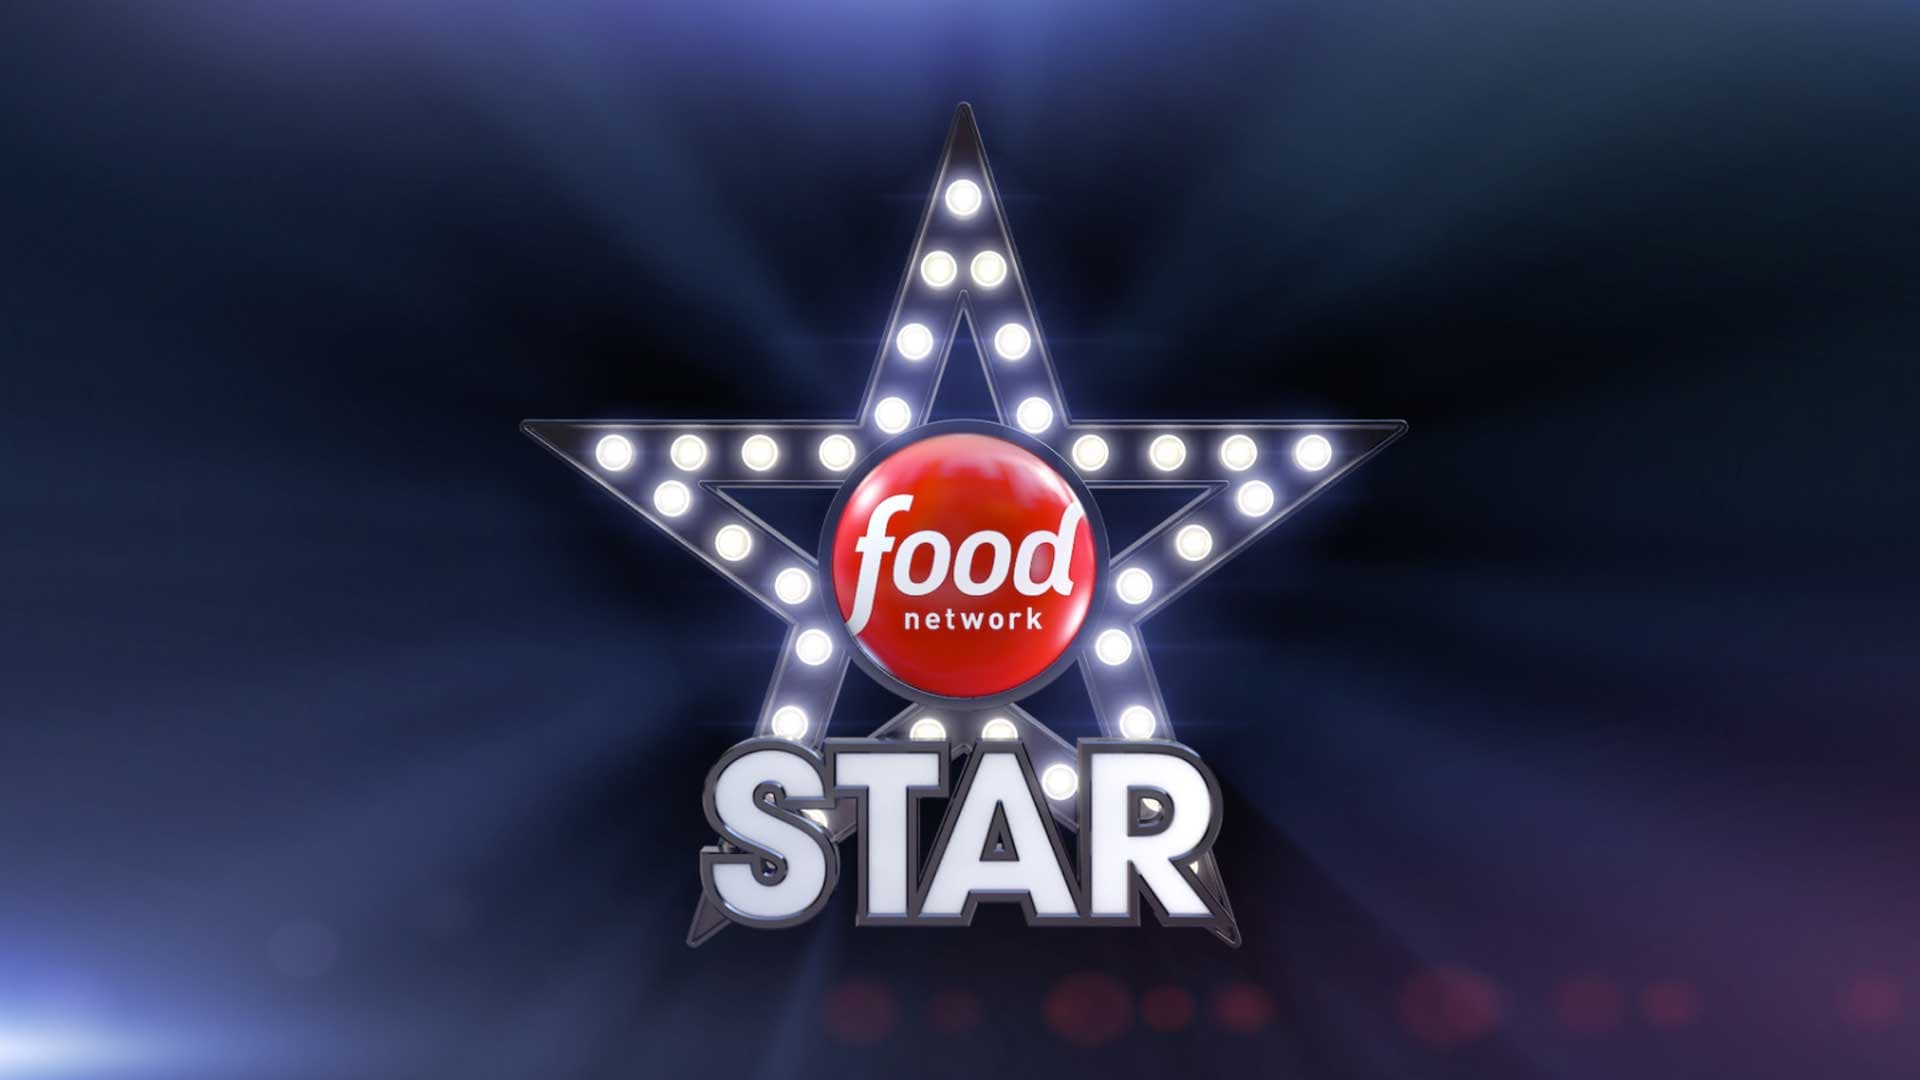 Volkswagen Atlas Featured in Food Network Star TV Series